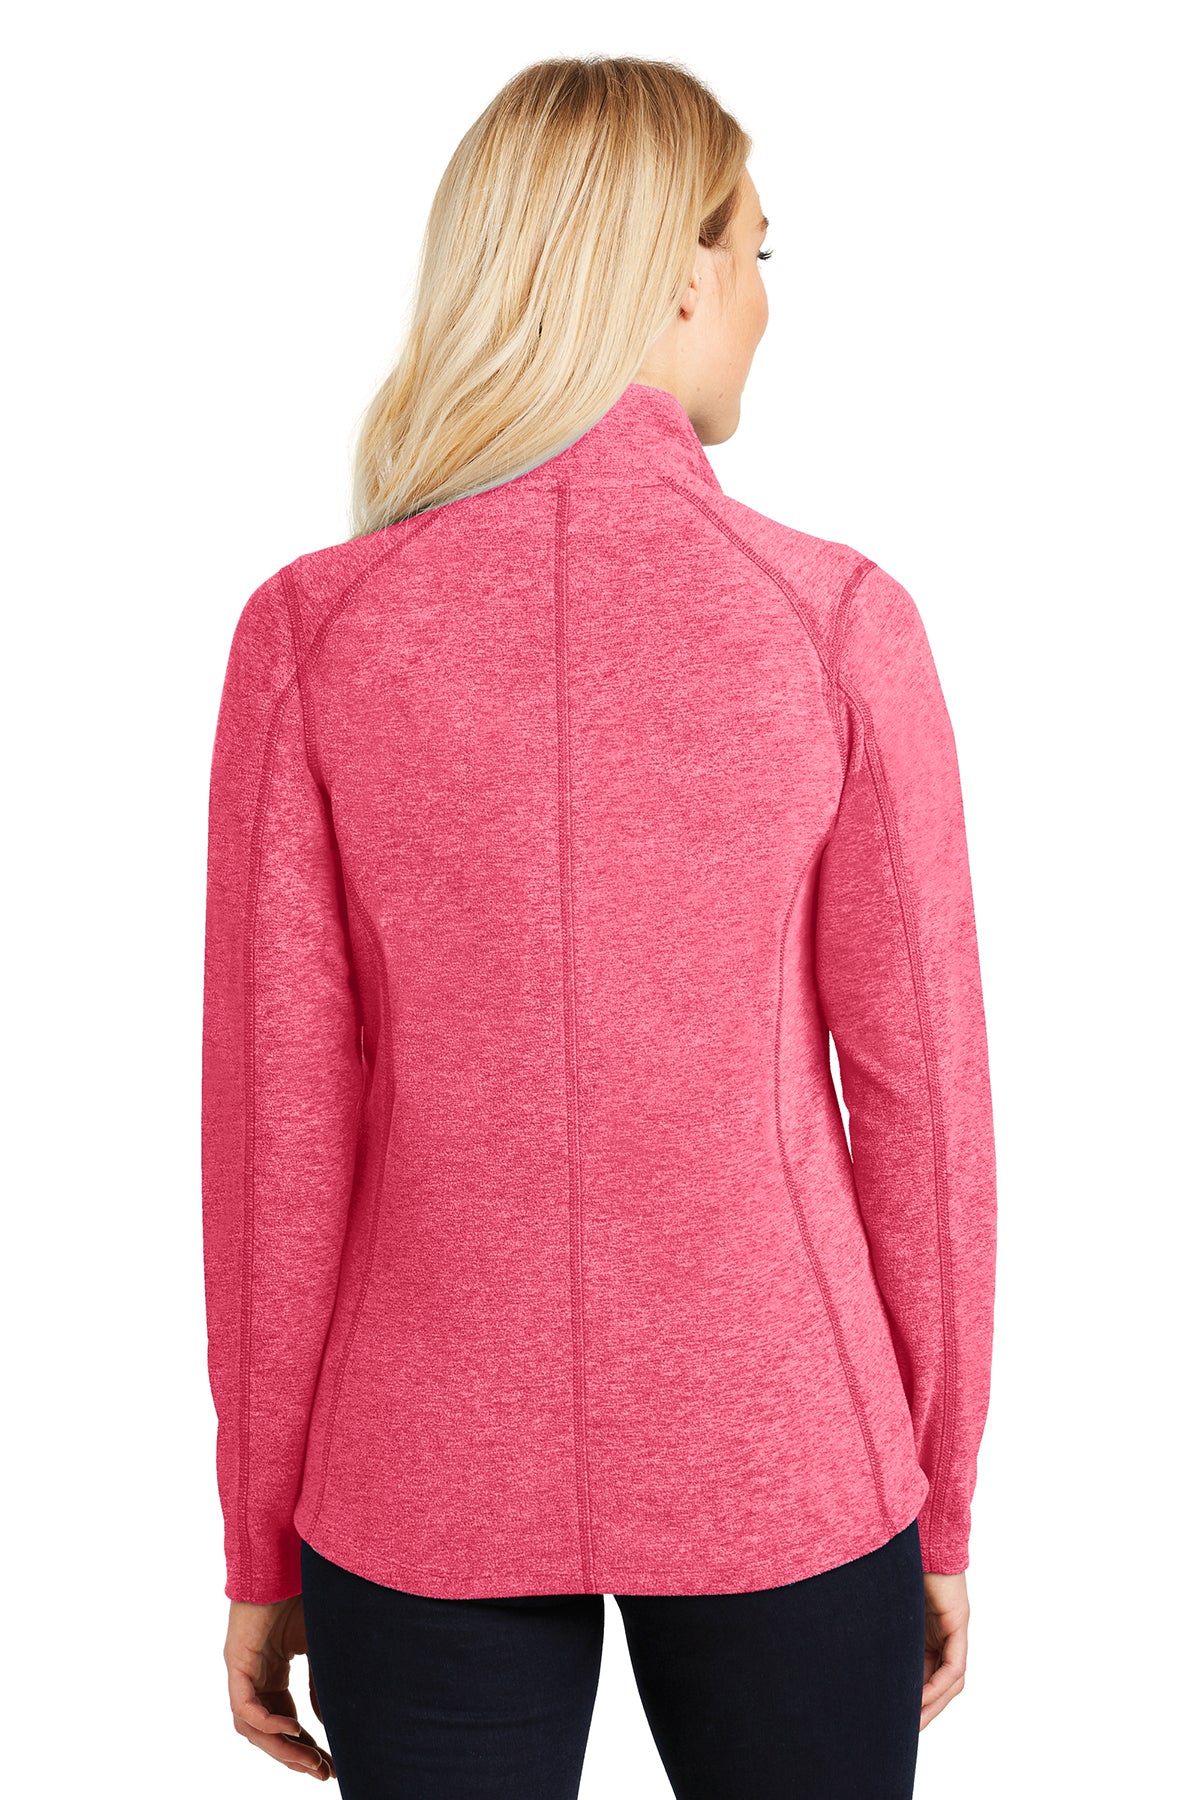 PA L235 Women's Microfleece jacket Pink Rasp